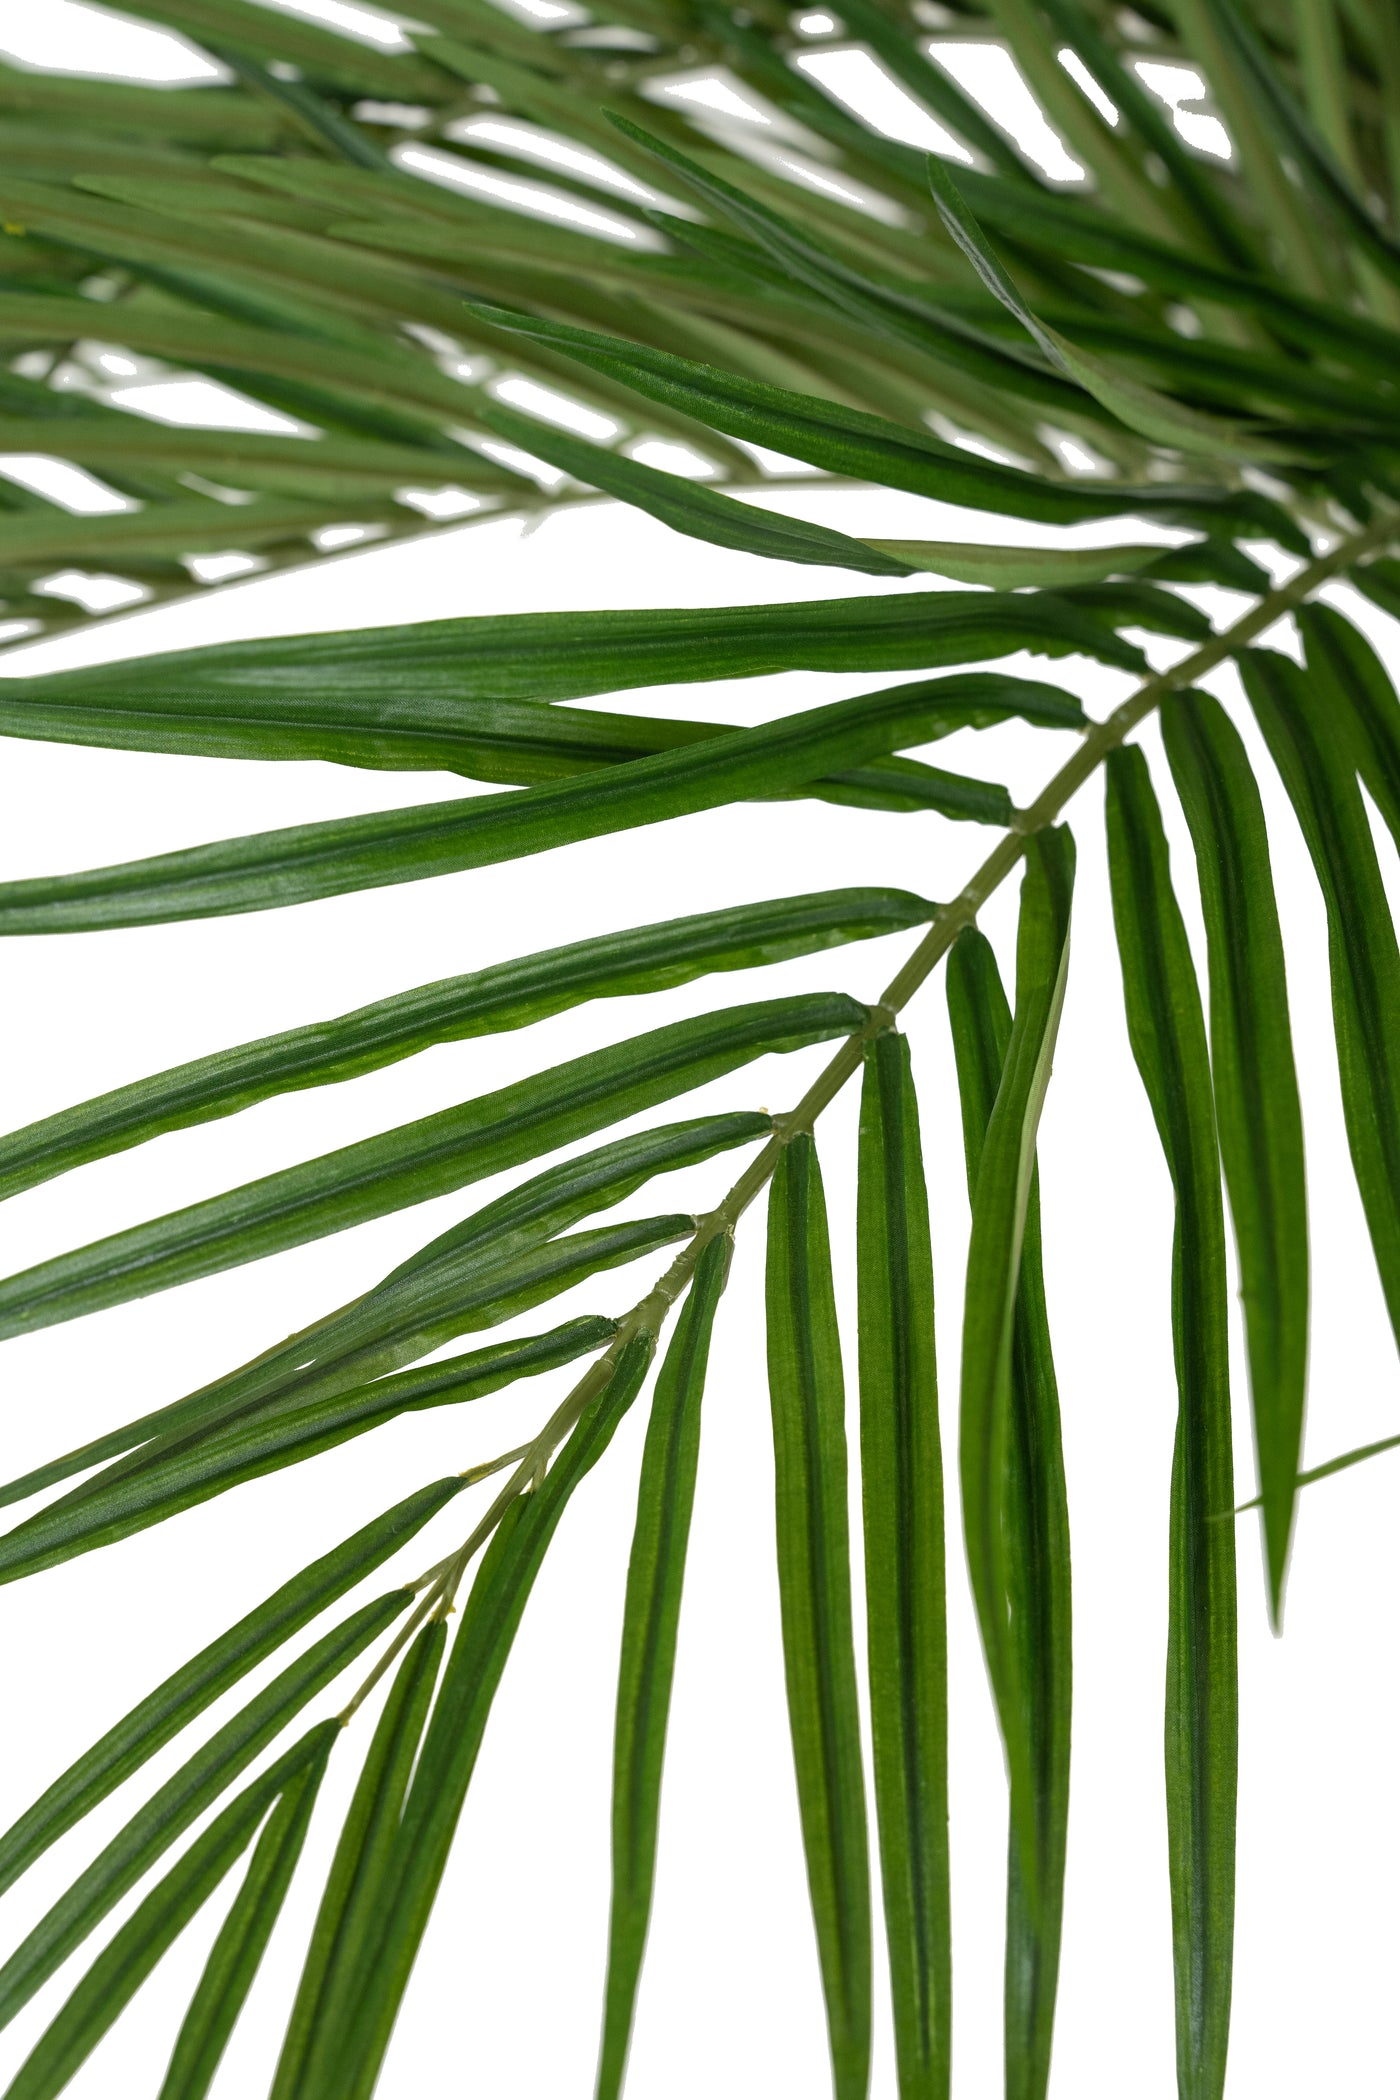 Palm artificial H240cm Areca De Luxe cu 2 trunchiuri